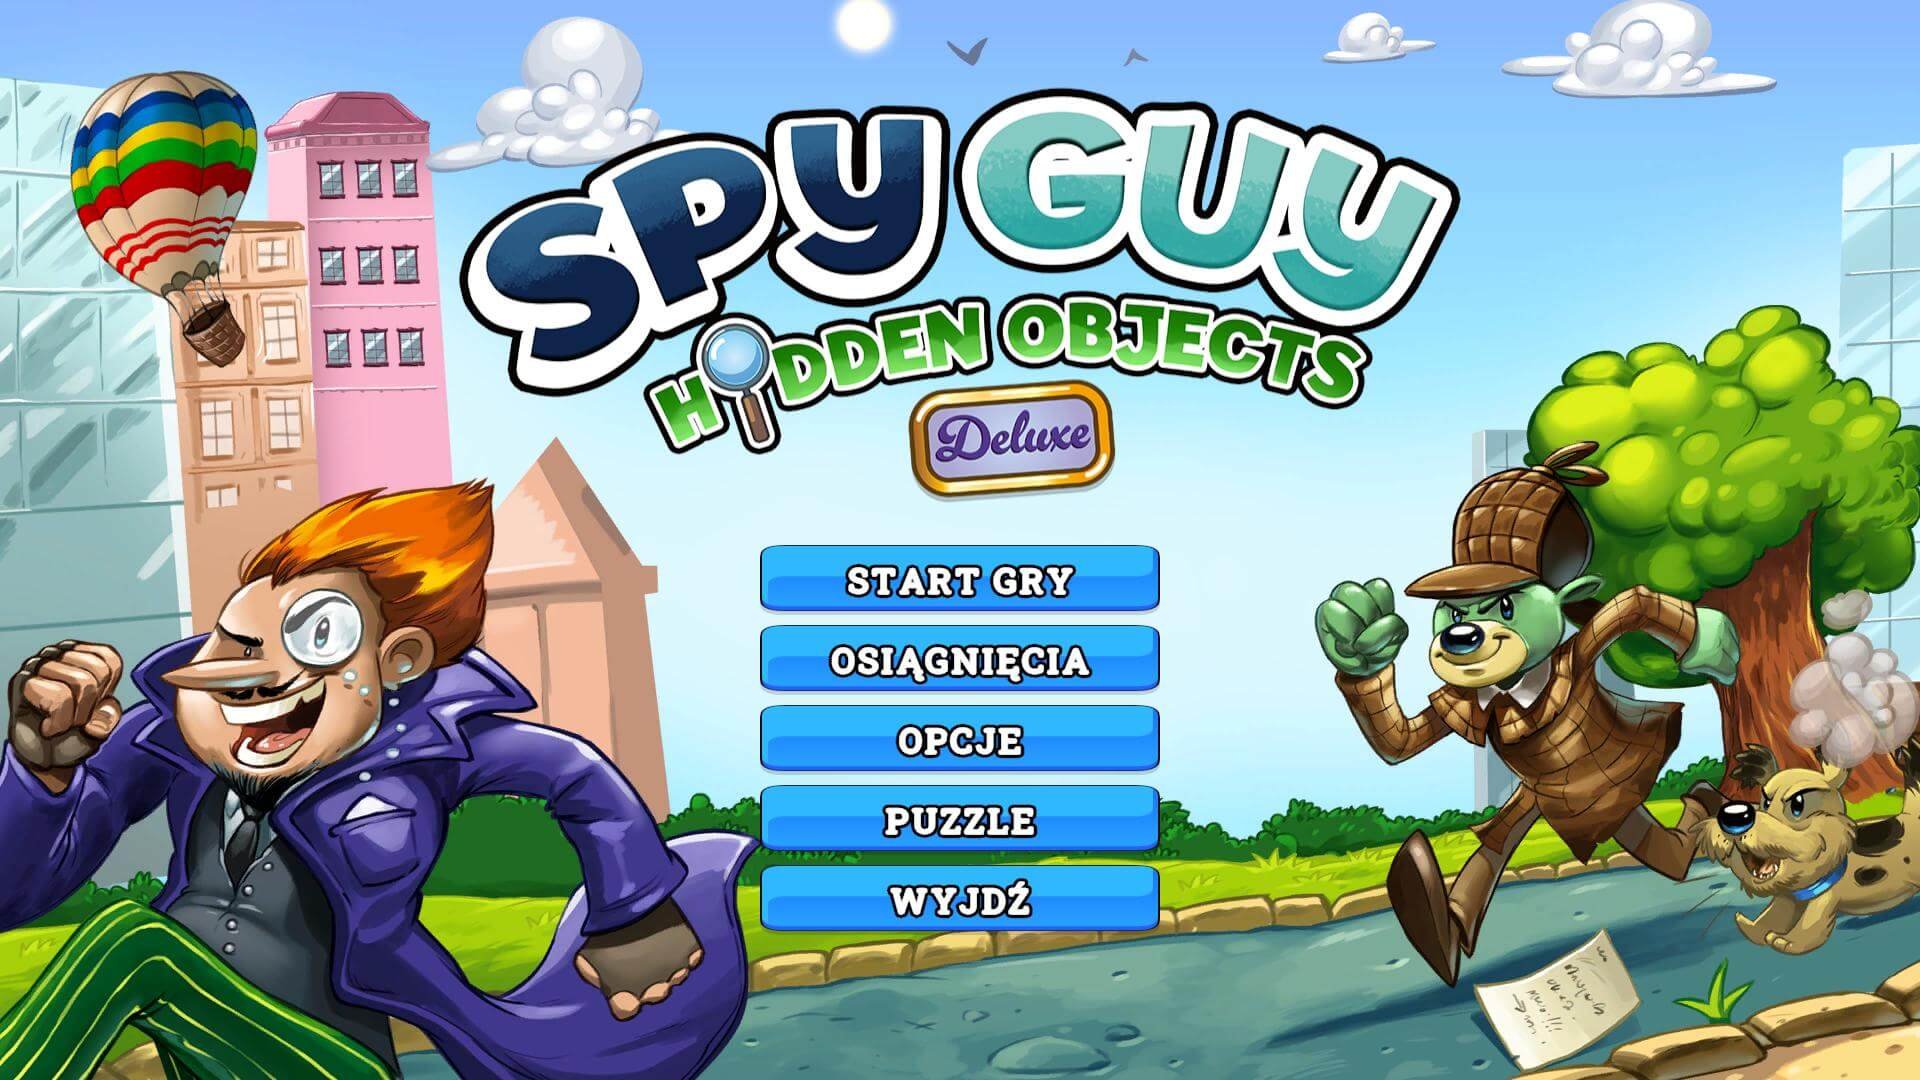 Premiera gry Spy Guy Hidden Objects Deluxe Edition na PC i NS jeszcze w tym roku!